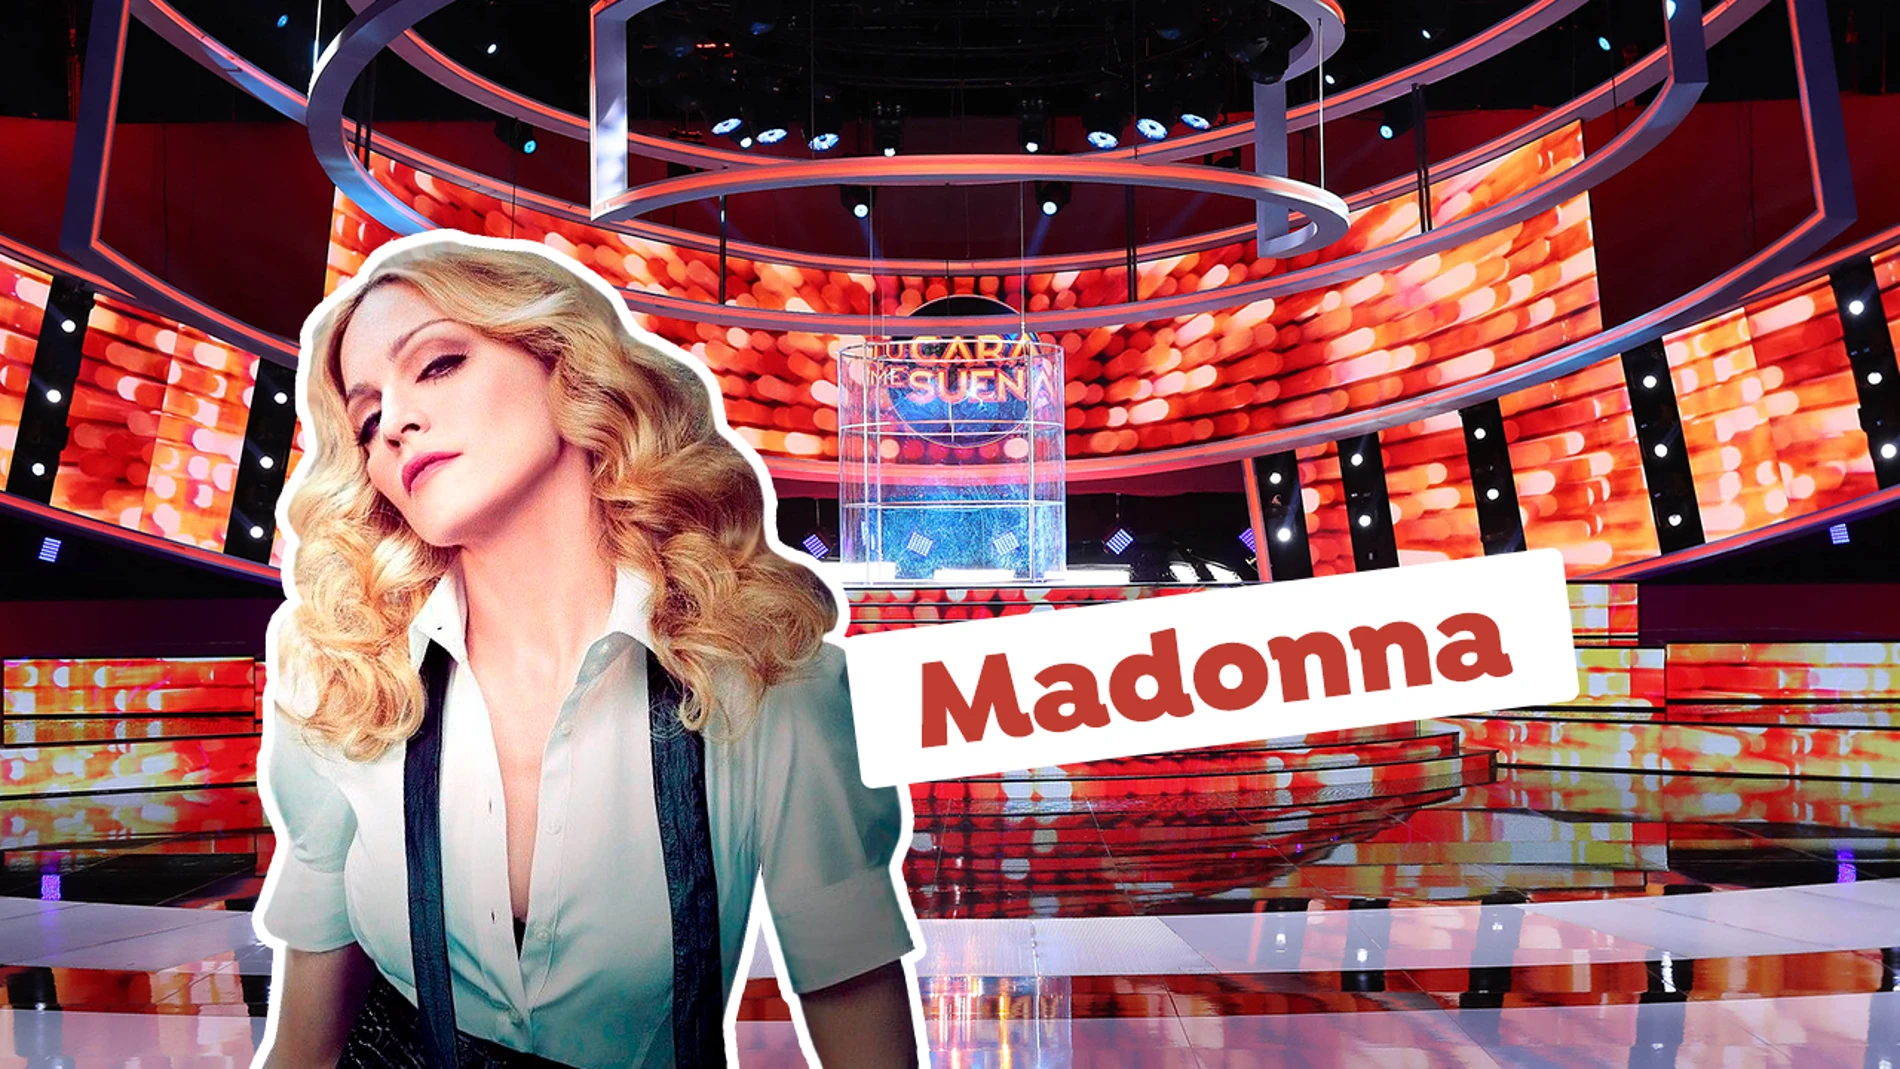 Madonna - Las imitaciones de Tu cara me suena